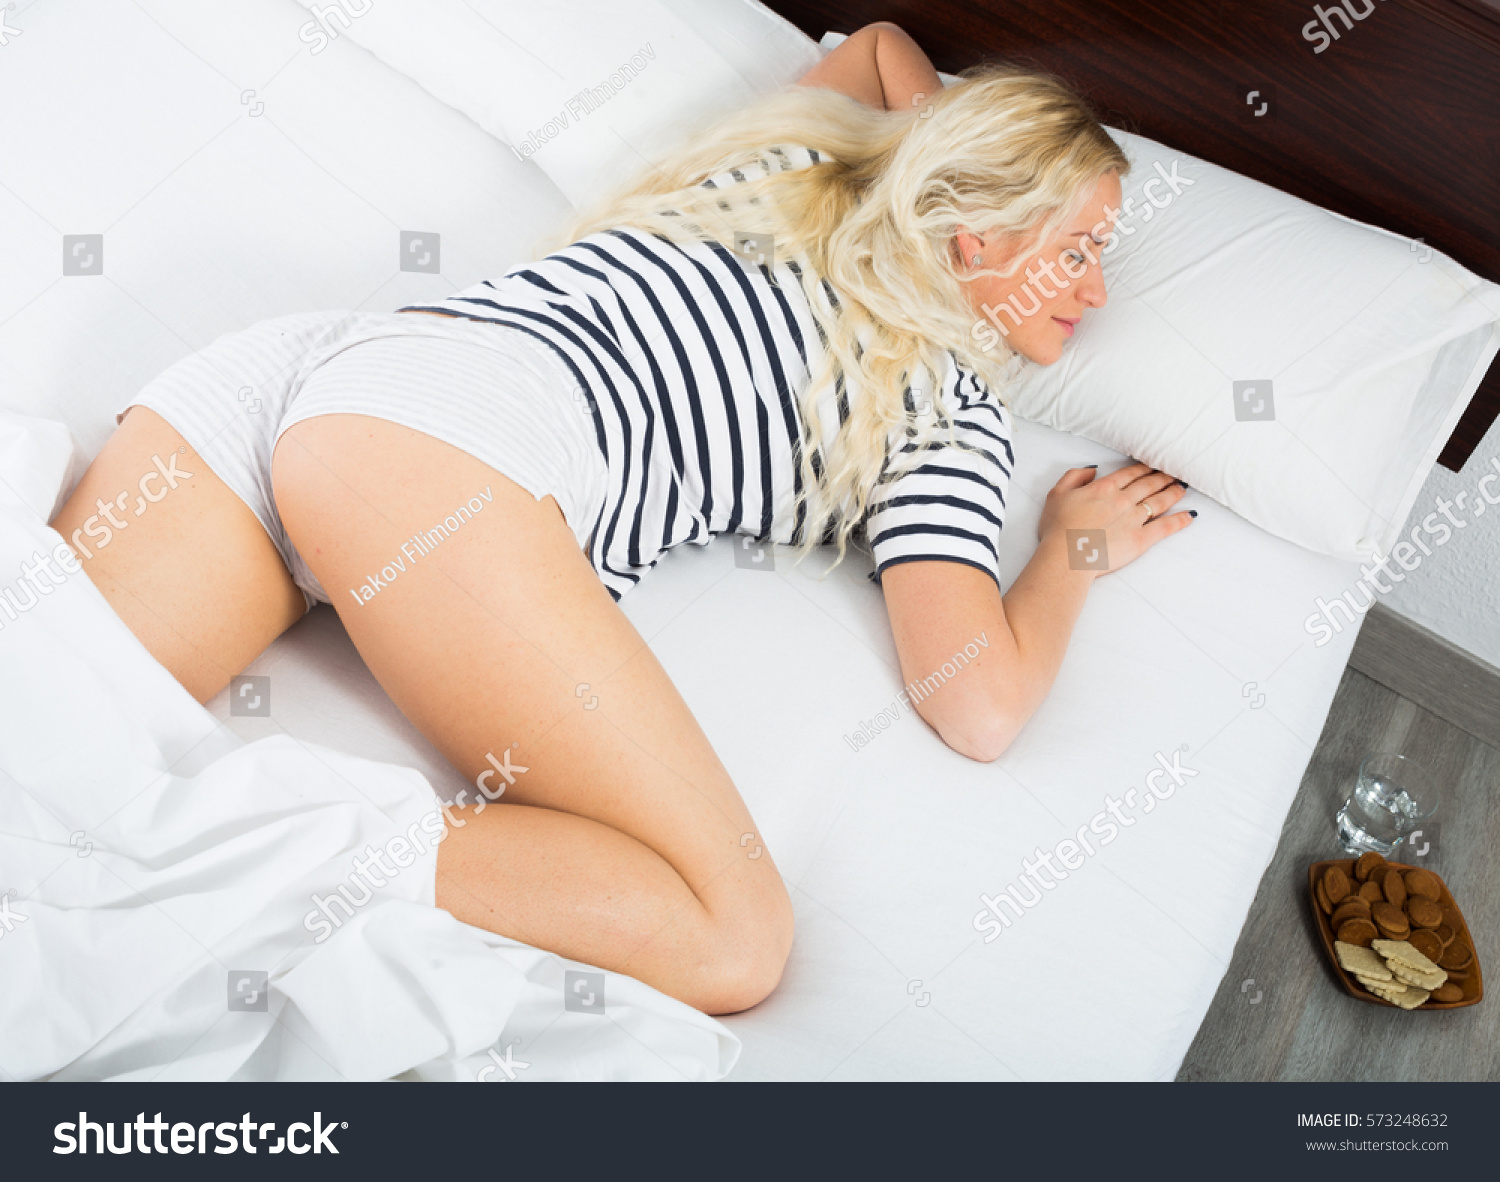 ariel sangster add photo woman sleeping in panties